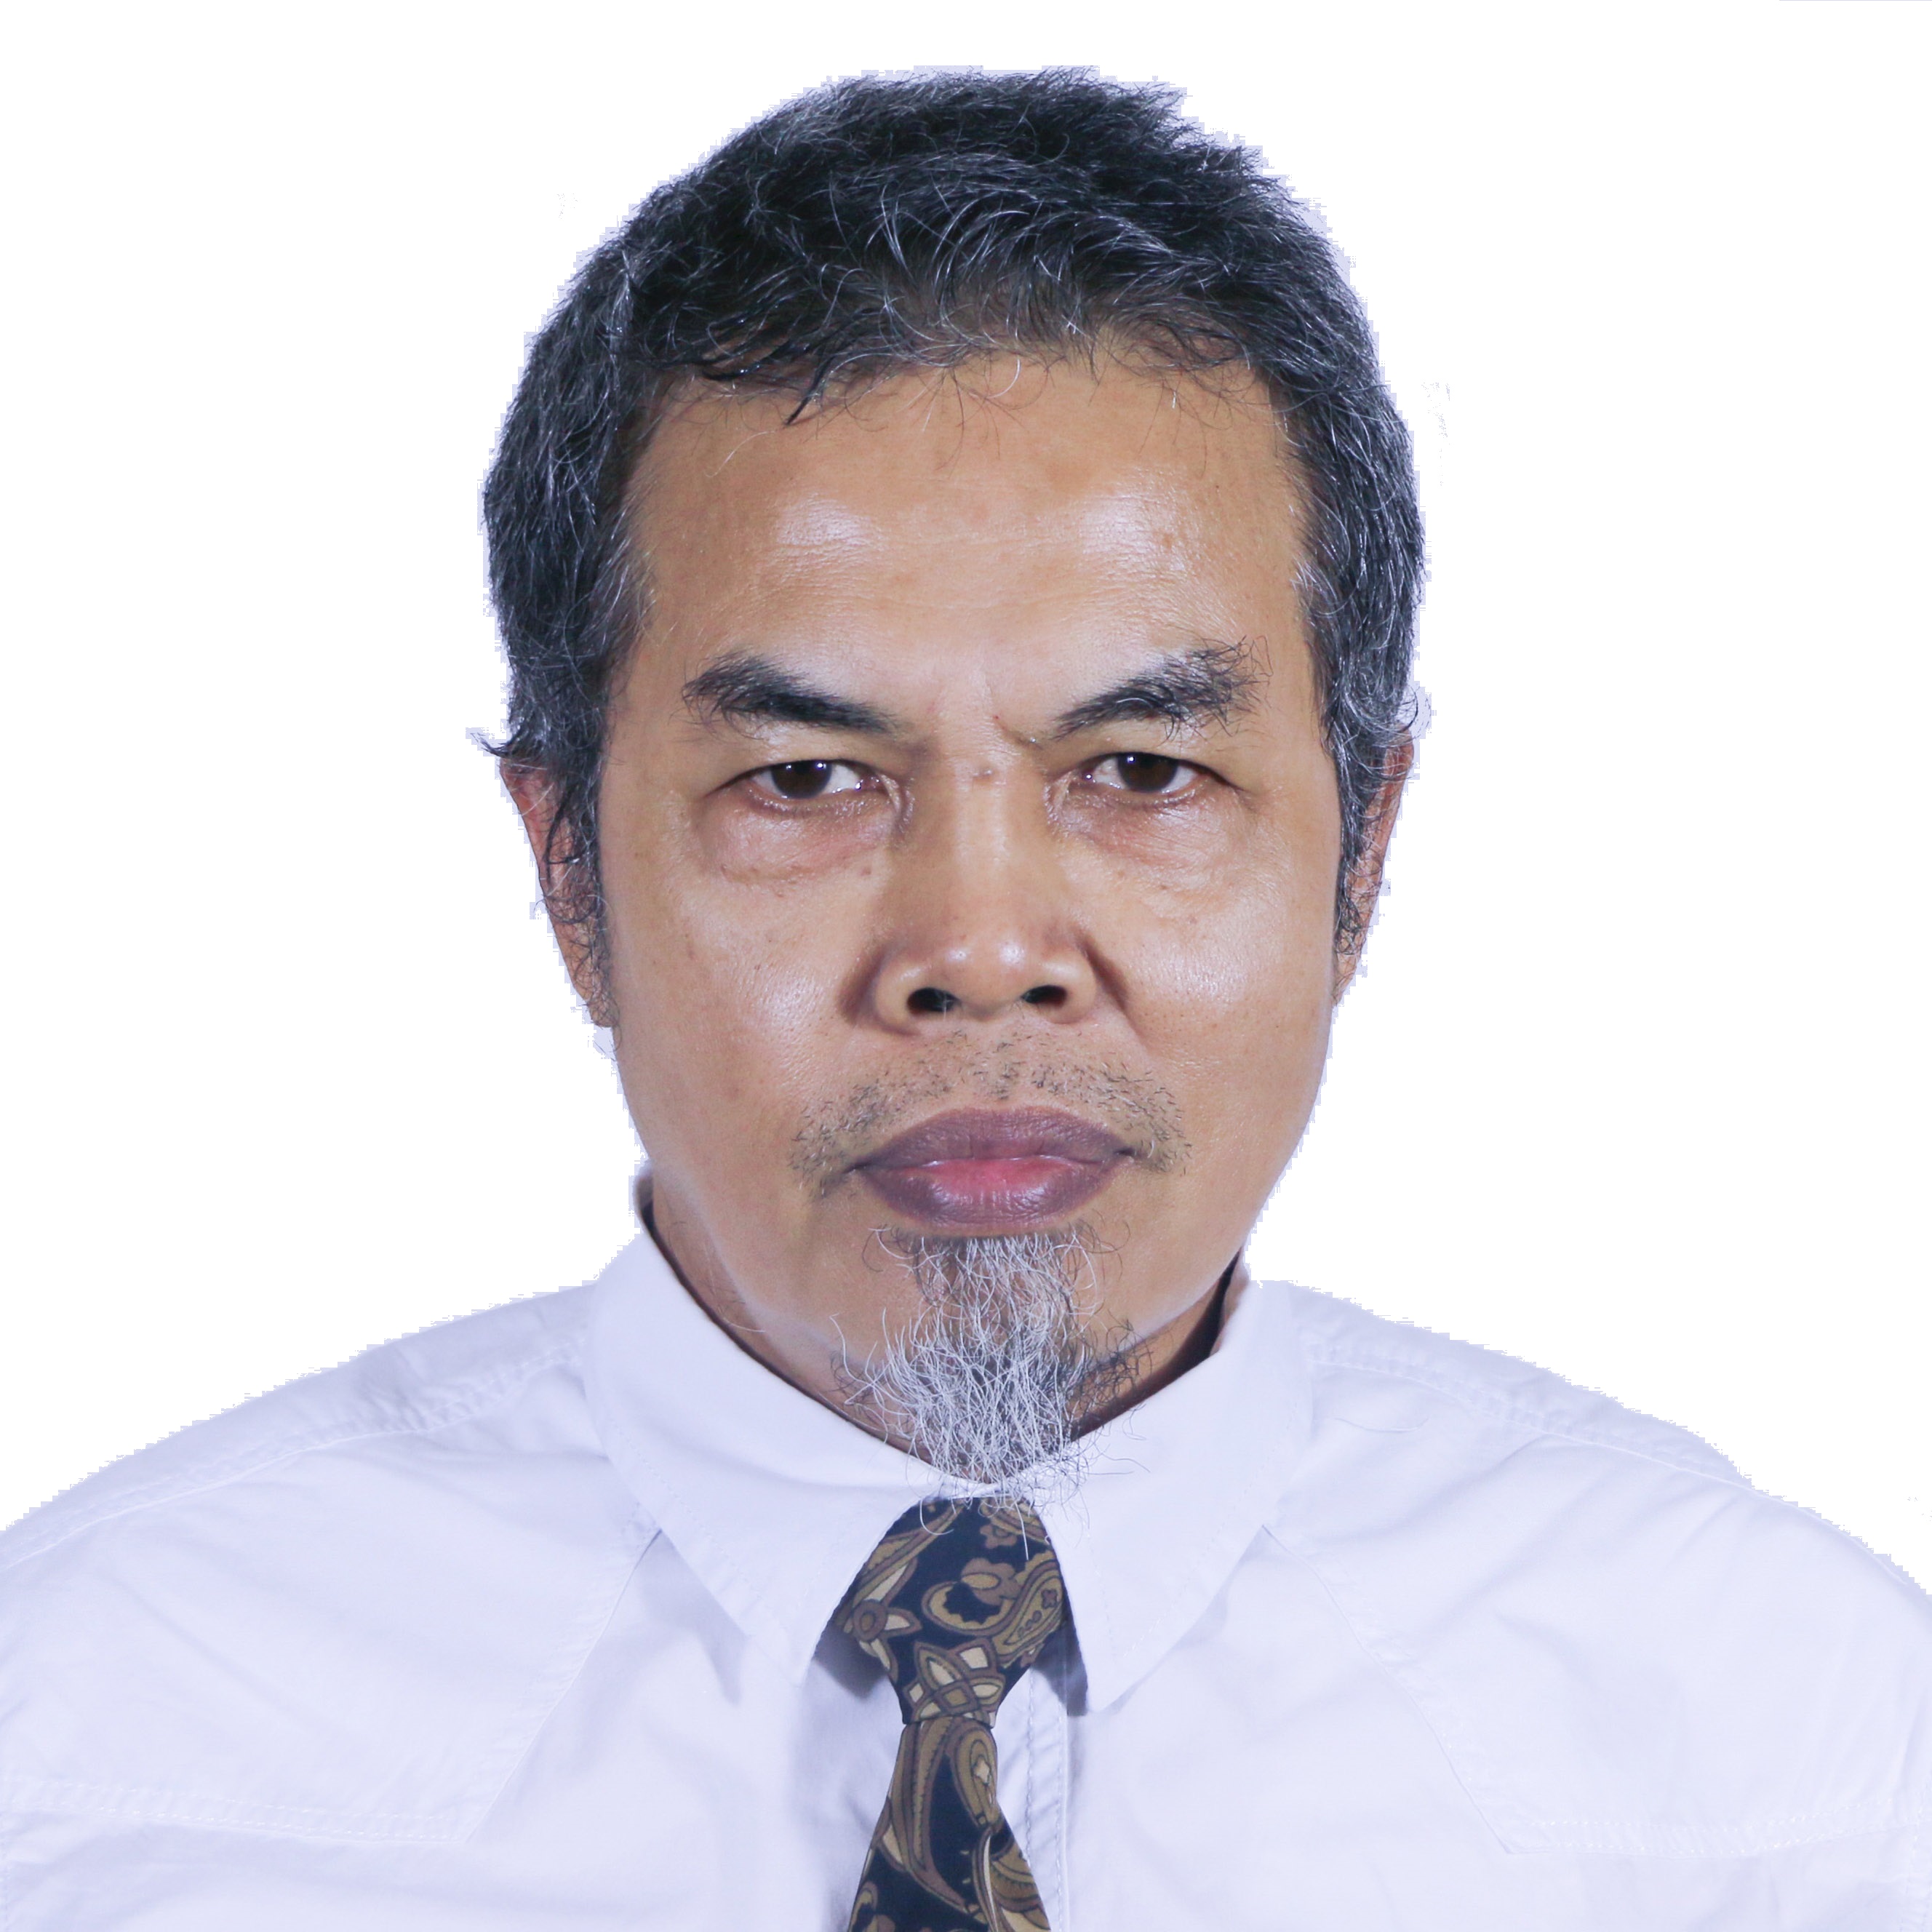 Drs. Bambang Nurcahyo Prastowo, M.Sc.